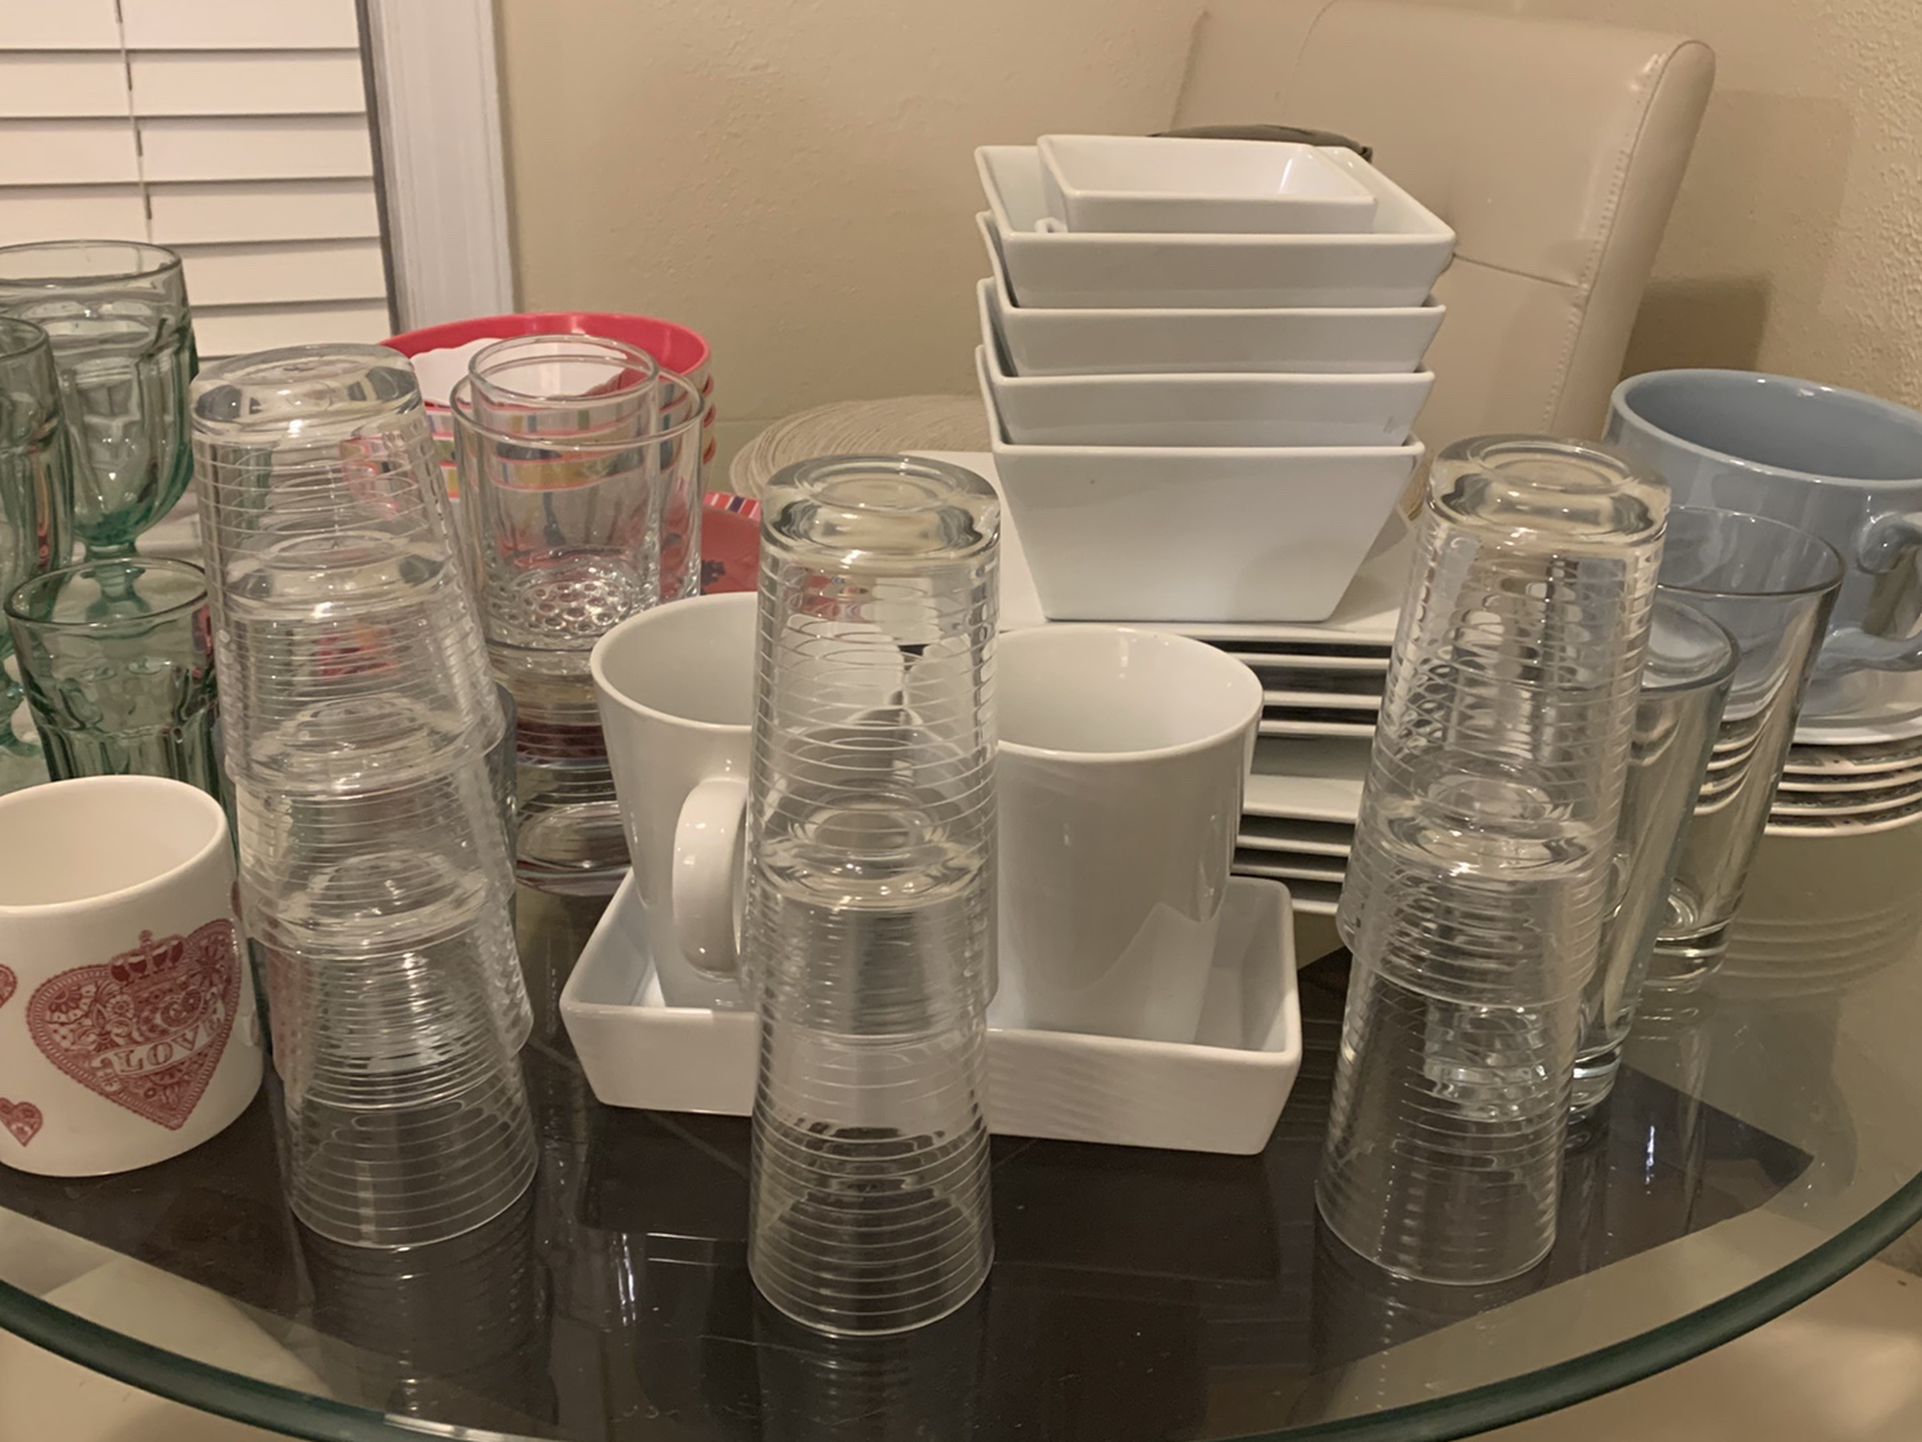 Dishes, Glasses, Kitchen Items